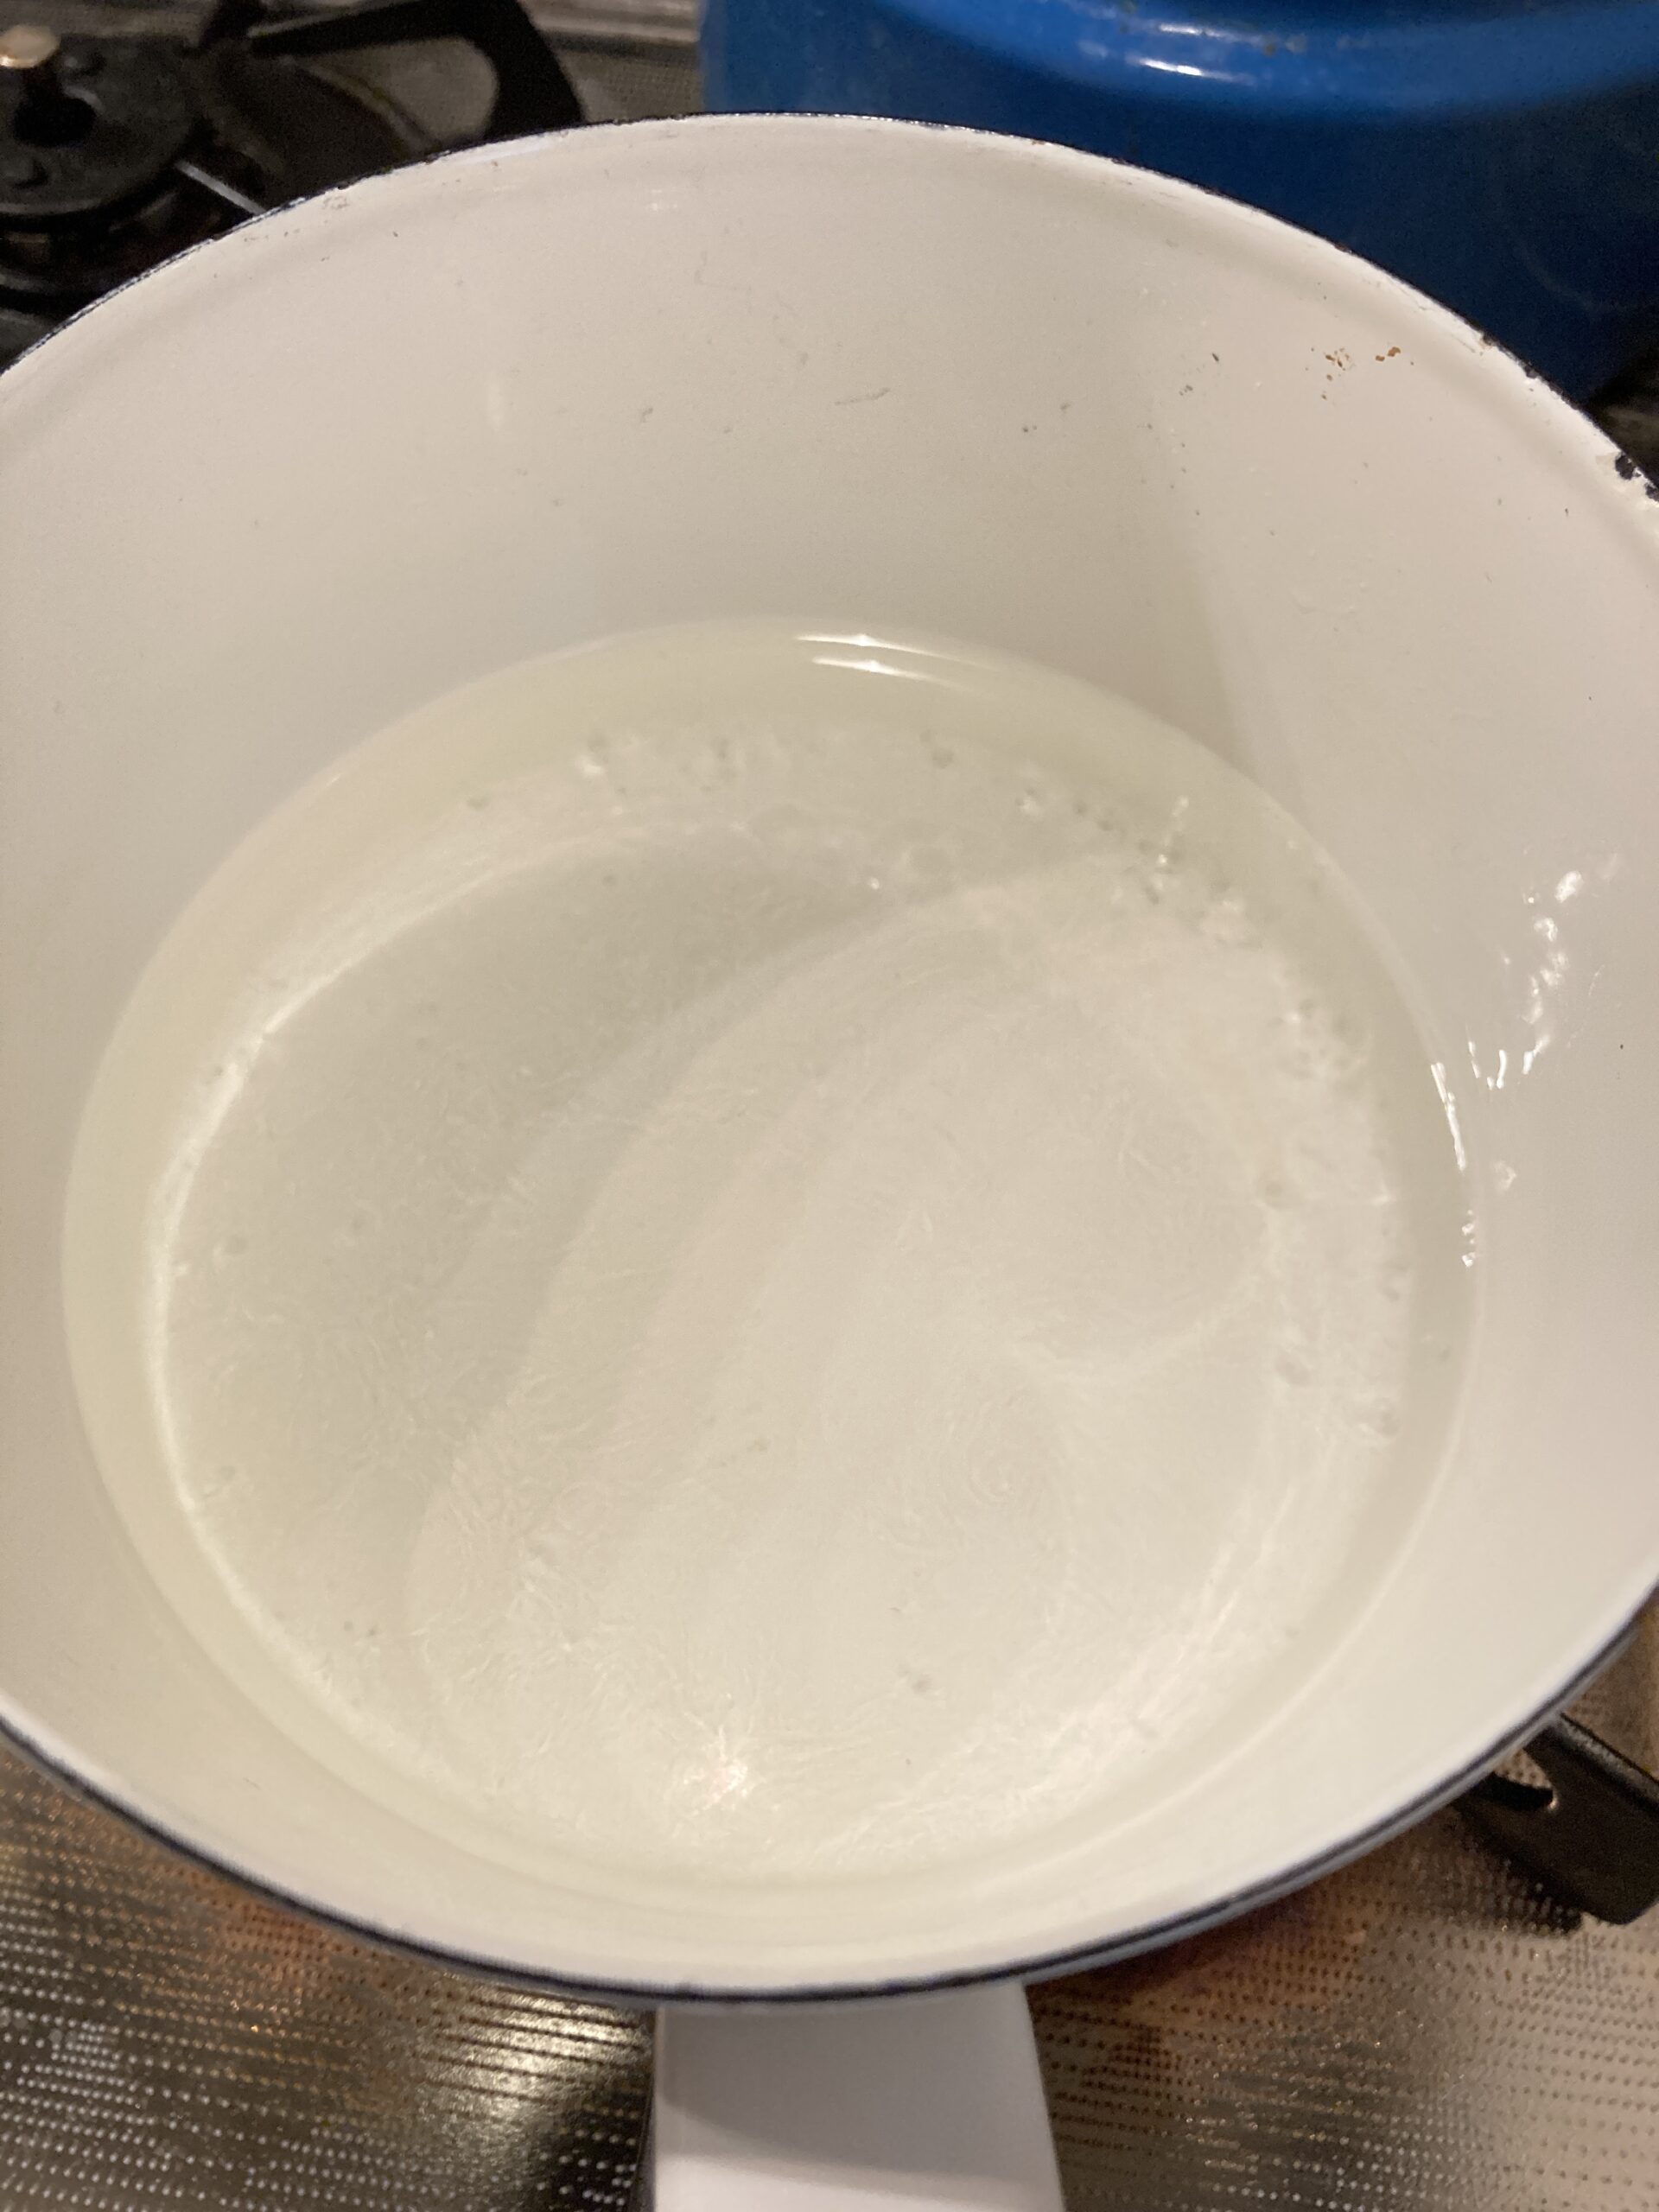 鍋に砂糖と水を入れ、砂糖が溶けるまで加熱します